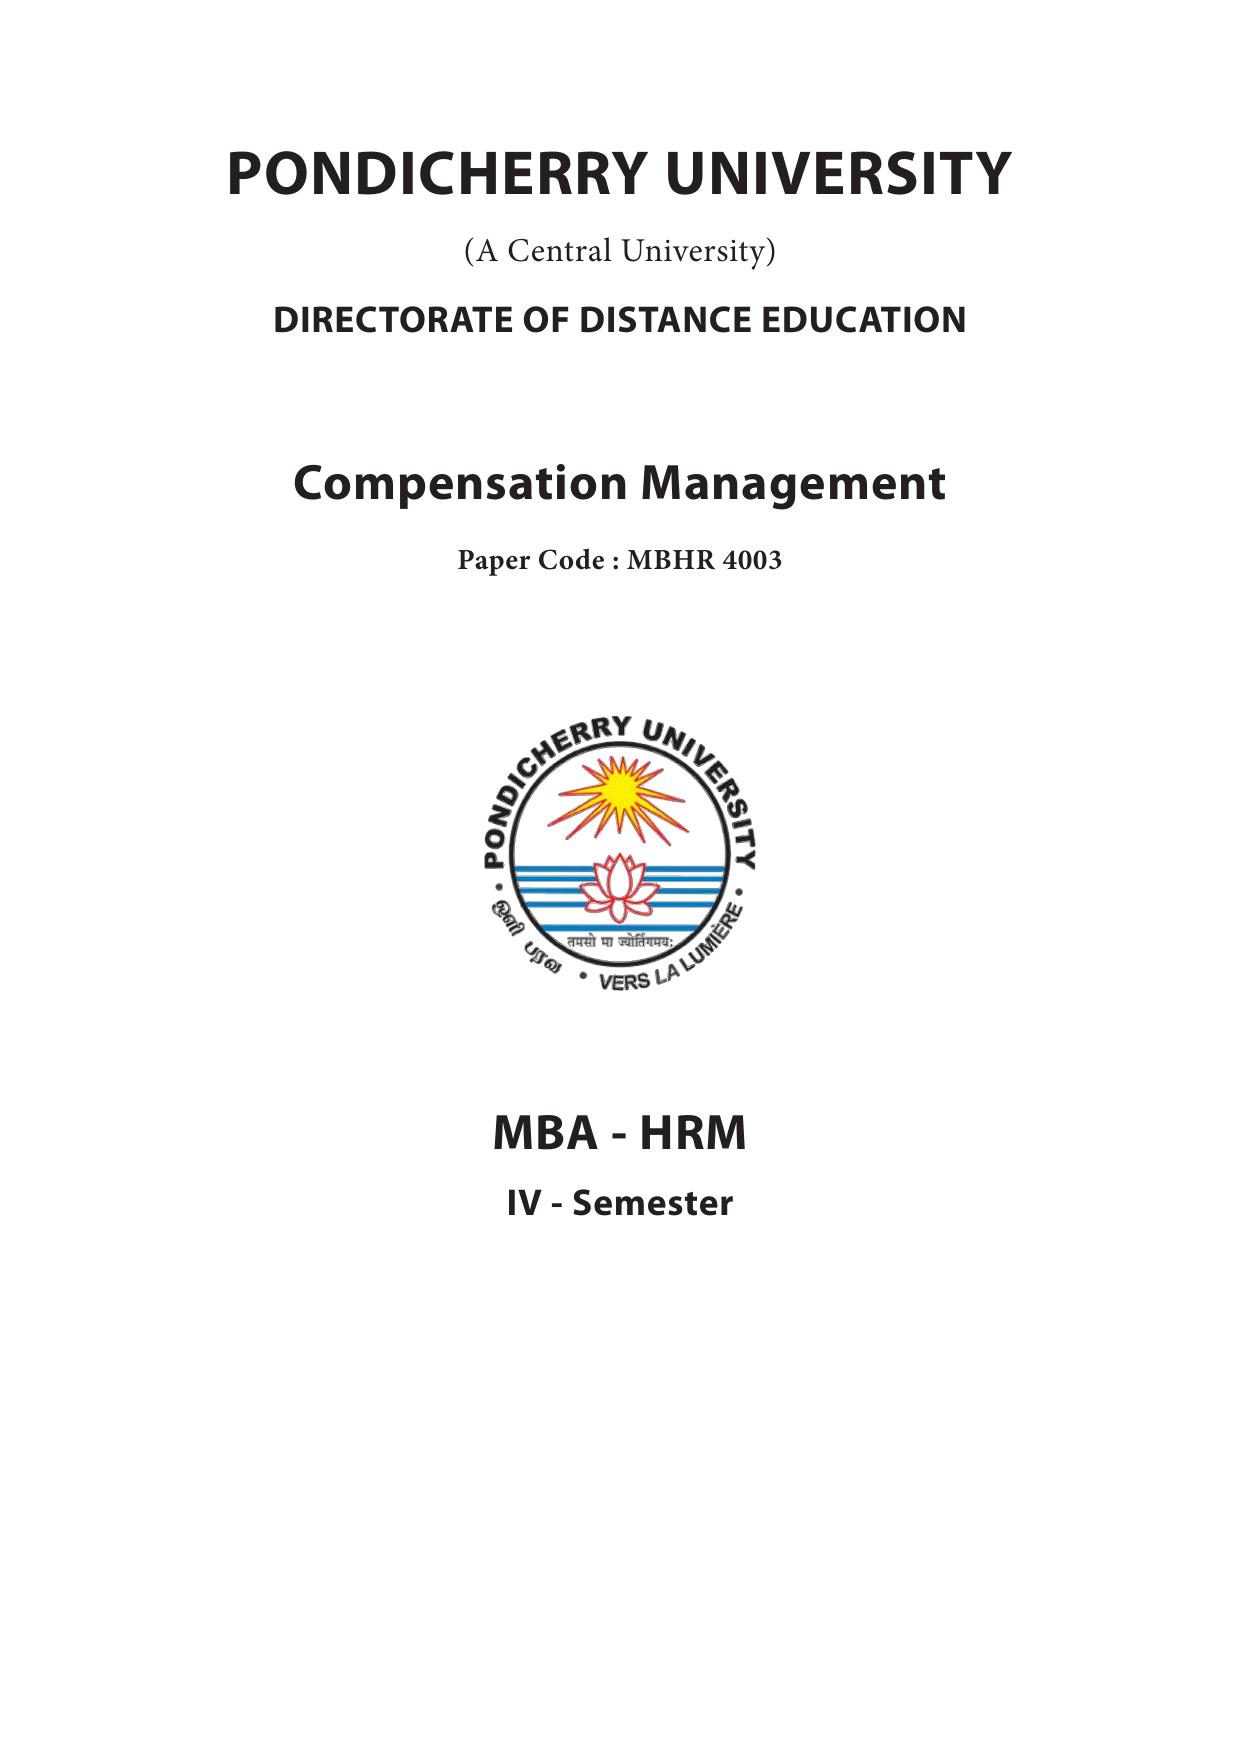 Compensation Management 2014